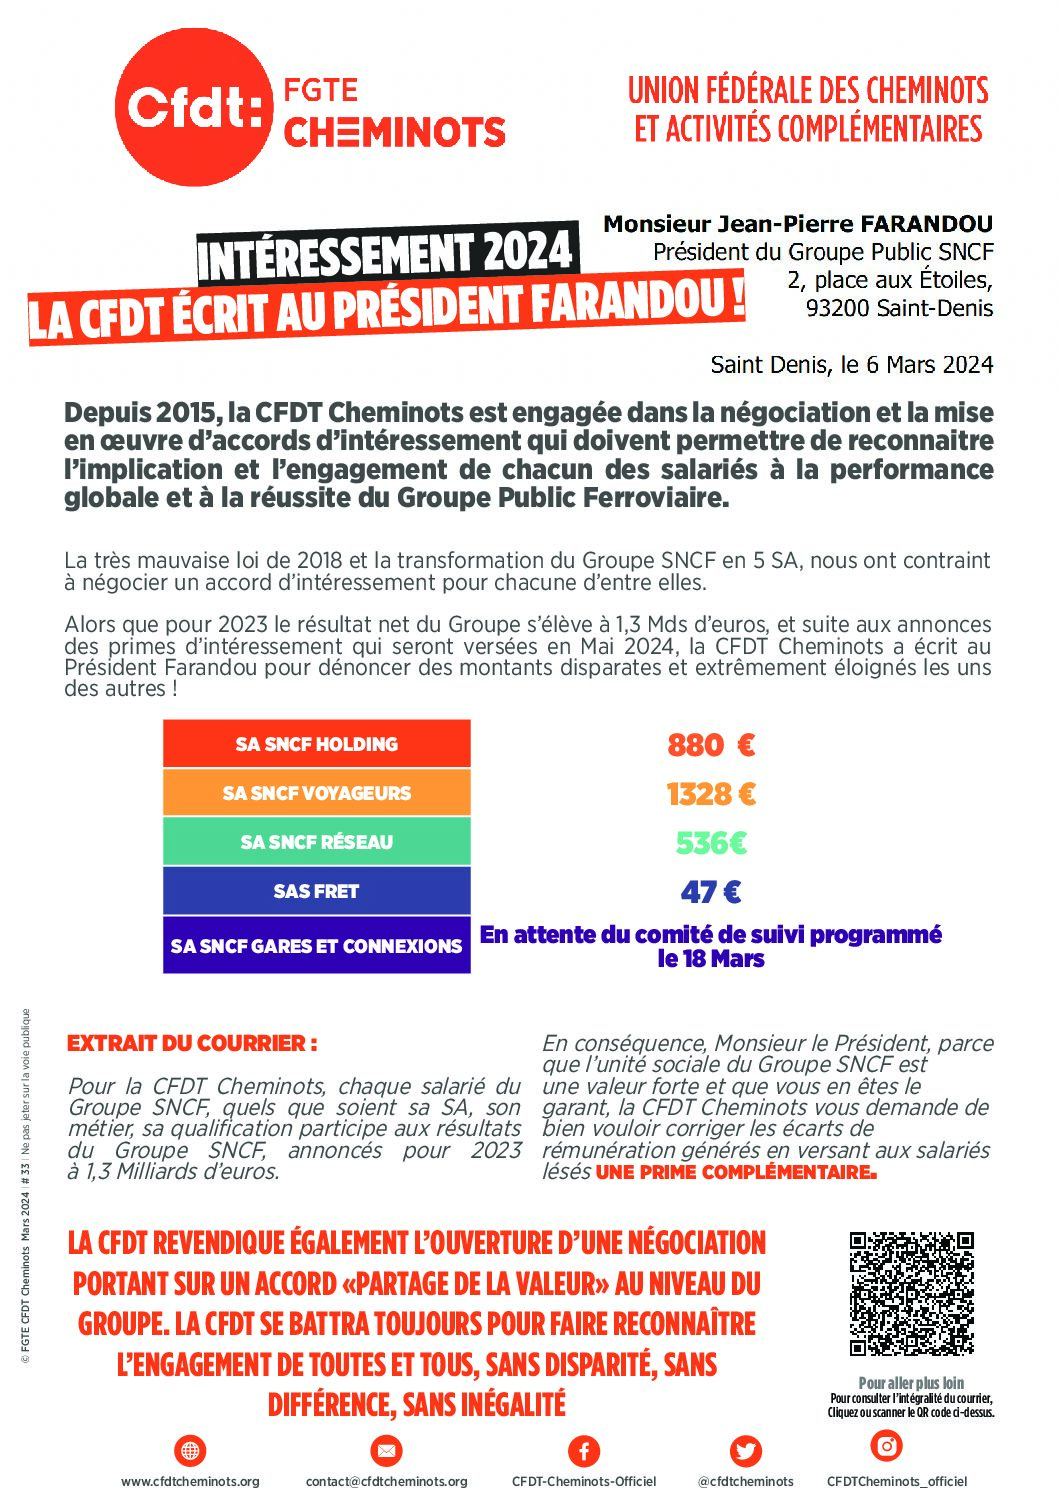 Intéressement 2024, la CFDT écrit au Président Farandou !